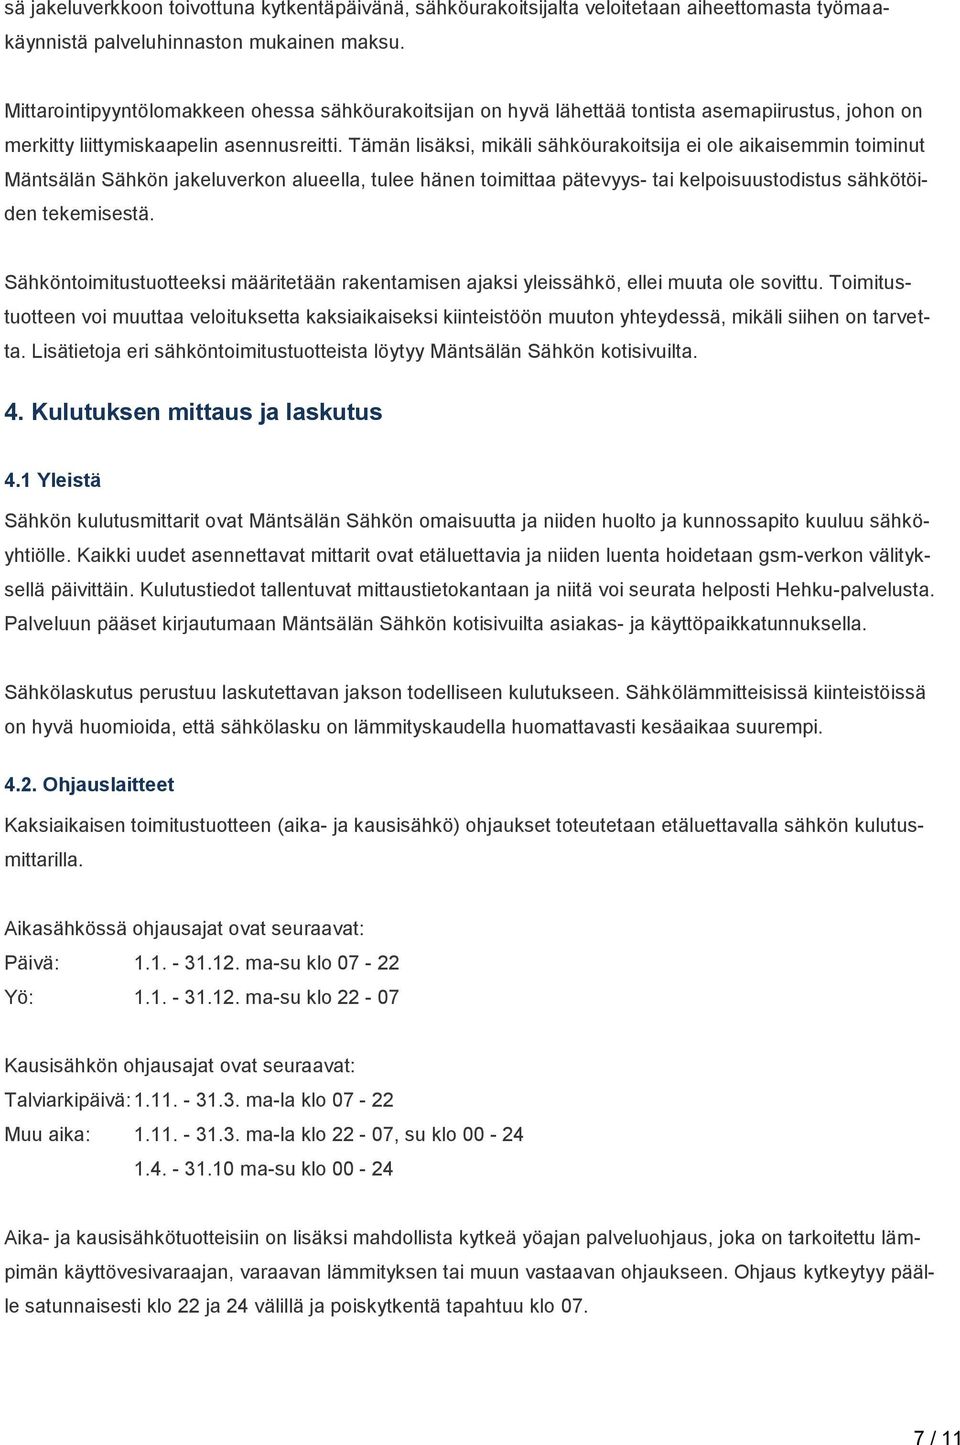 Tämän lisäksi, mikäli sähköurakoitsija ei ole aikaisemmin toiminut Mäntsälän Sähkön jakeluverkon alueella, tulee hänen toimittaa pätevyys- tai kelpoisuustodistus sähkötöiden tekemisestä.